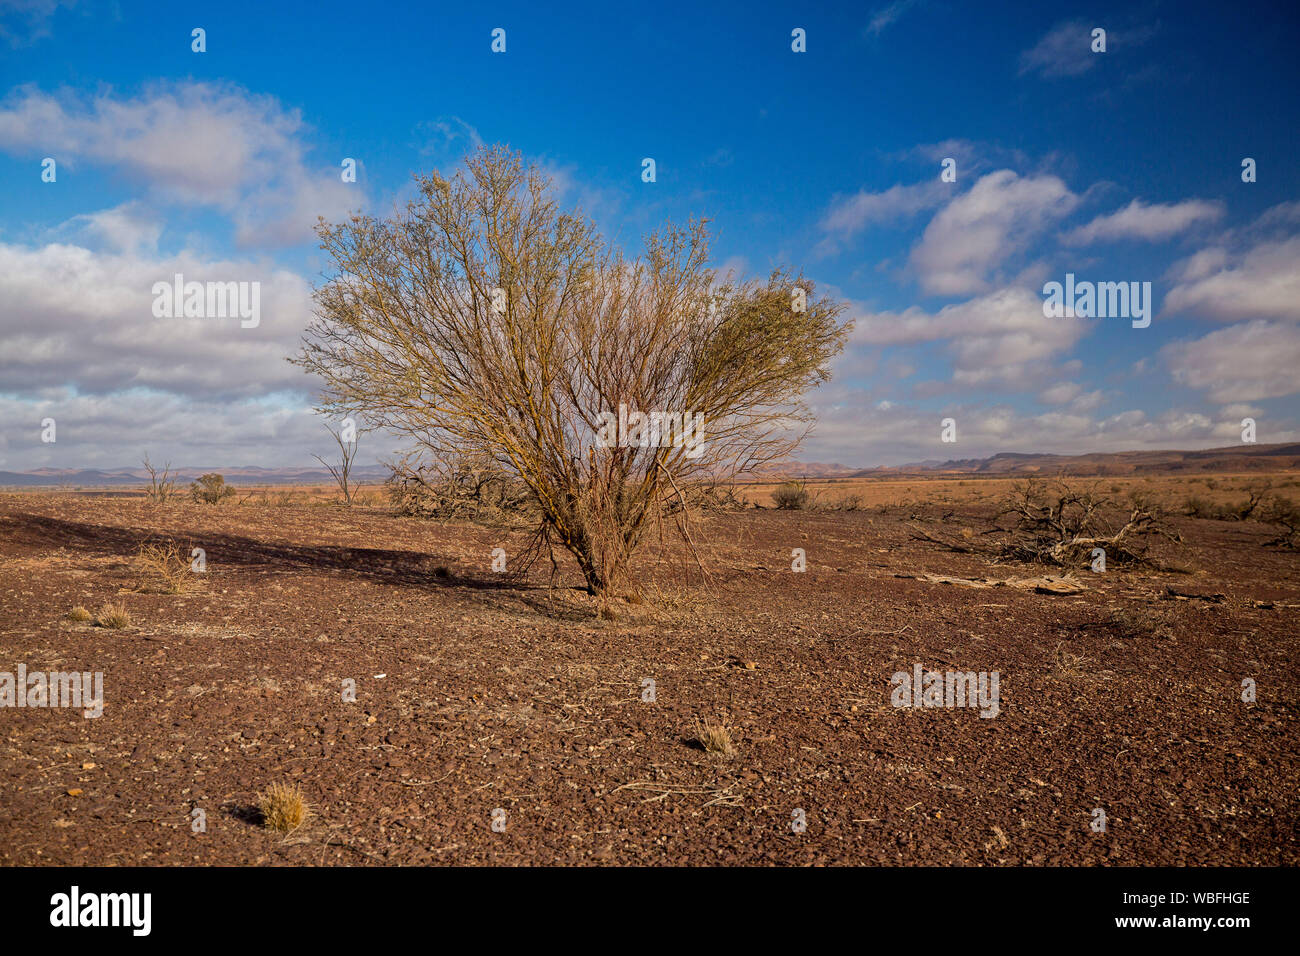 Arid Australian Outback Landschaft mit kargen rote Erde der Ebenen, einsamen niedrigen Baum während der Dürre, und Flinders Ranges in der Entfernung unter blauem Himmel Stockfoto